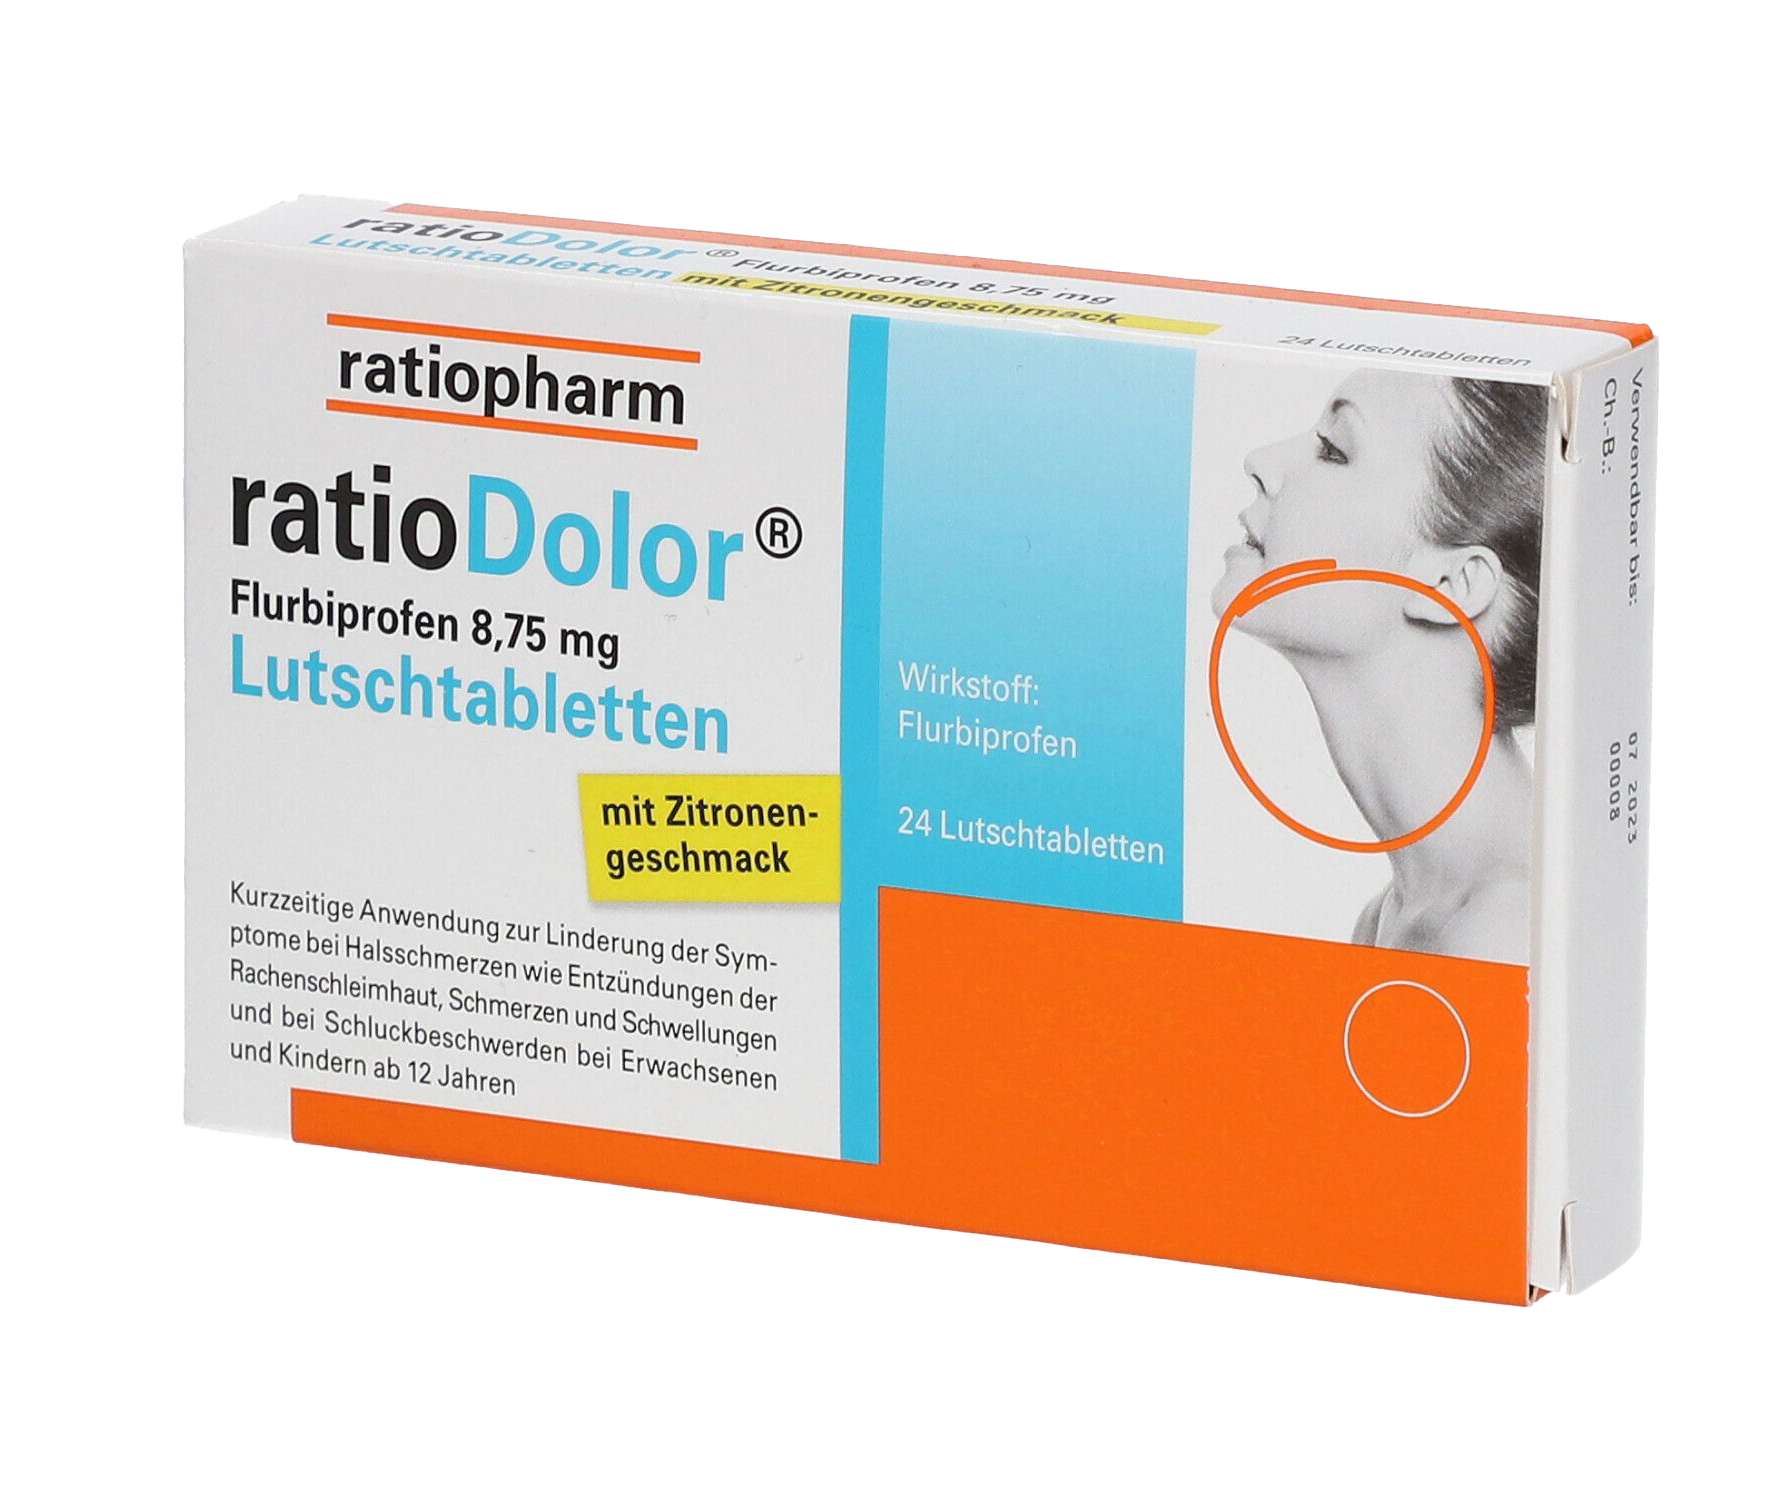 ratioDolor Flurbiprofen 8,75 mg - Lutschtabletten mit Zitronengeschmack